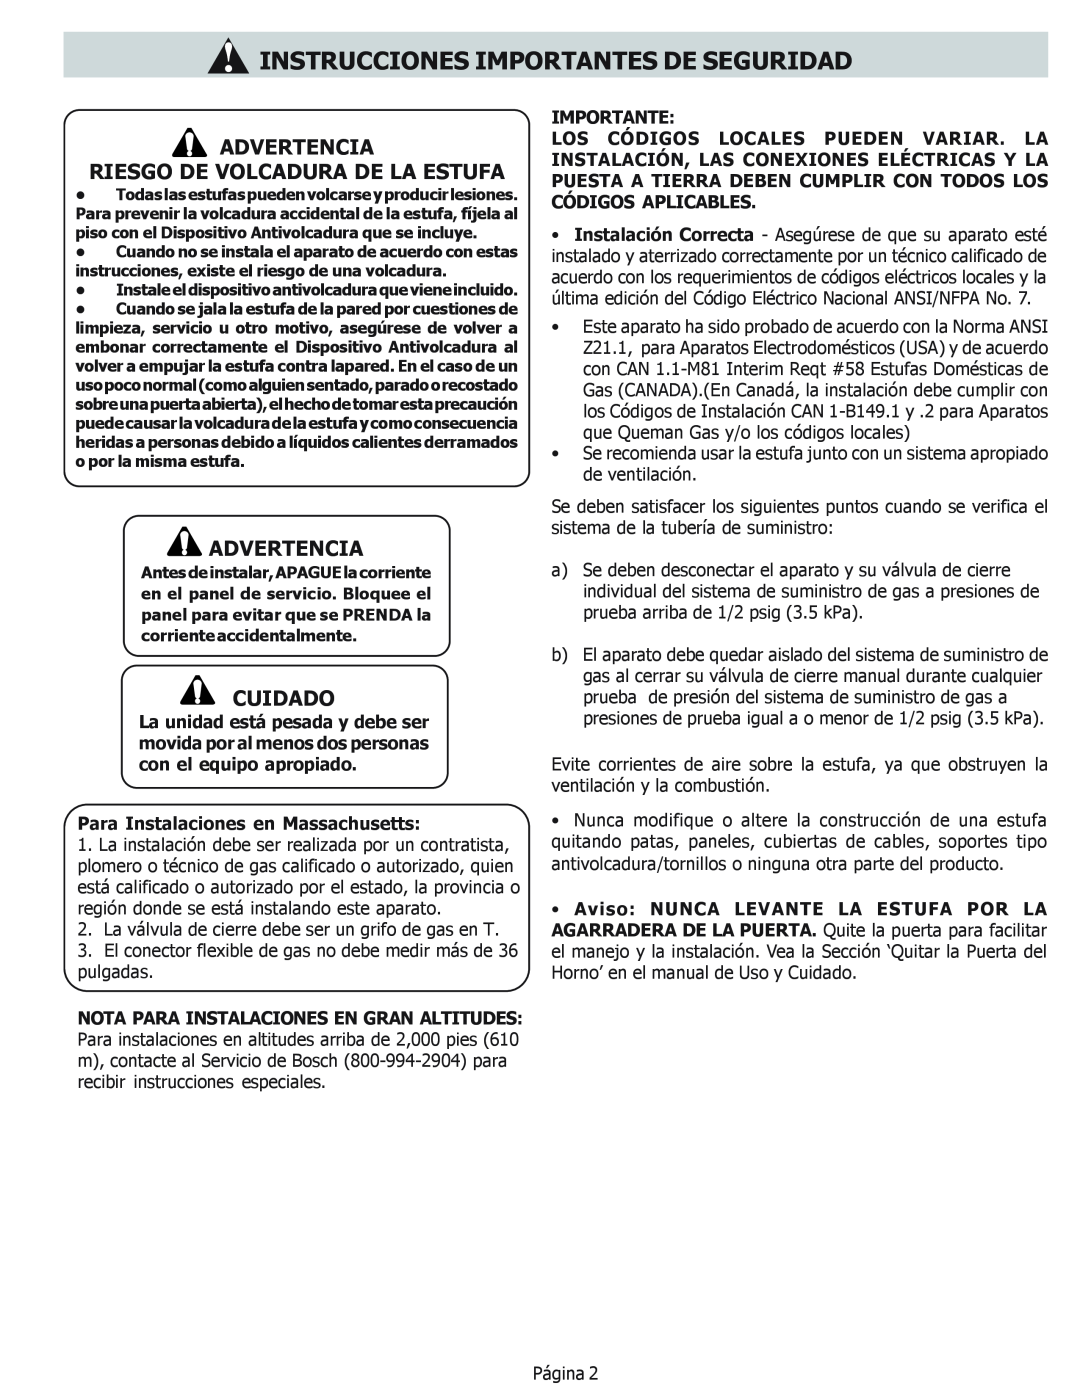 Bosch Appliances HDS256U Advertencia Riesgo De Volcadura De La Estufa, Instrucciones Importantes De Seguridad, Cuidado 